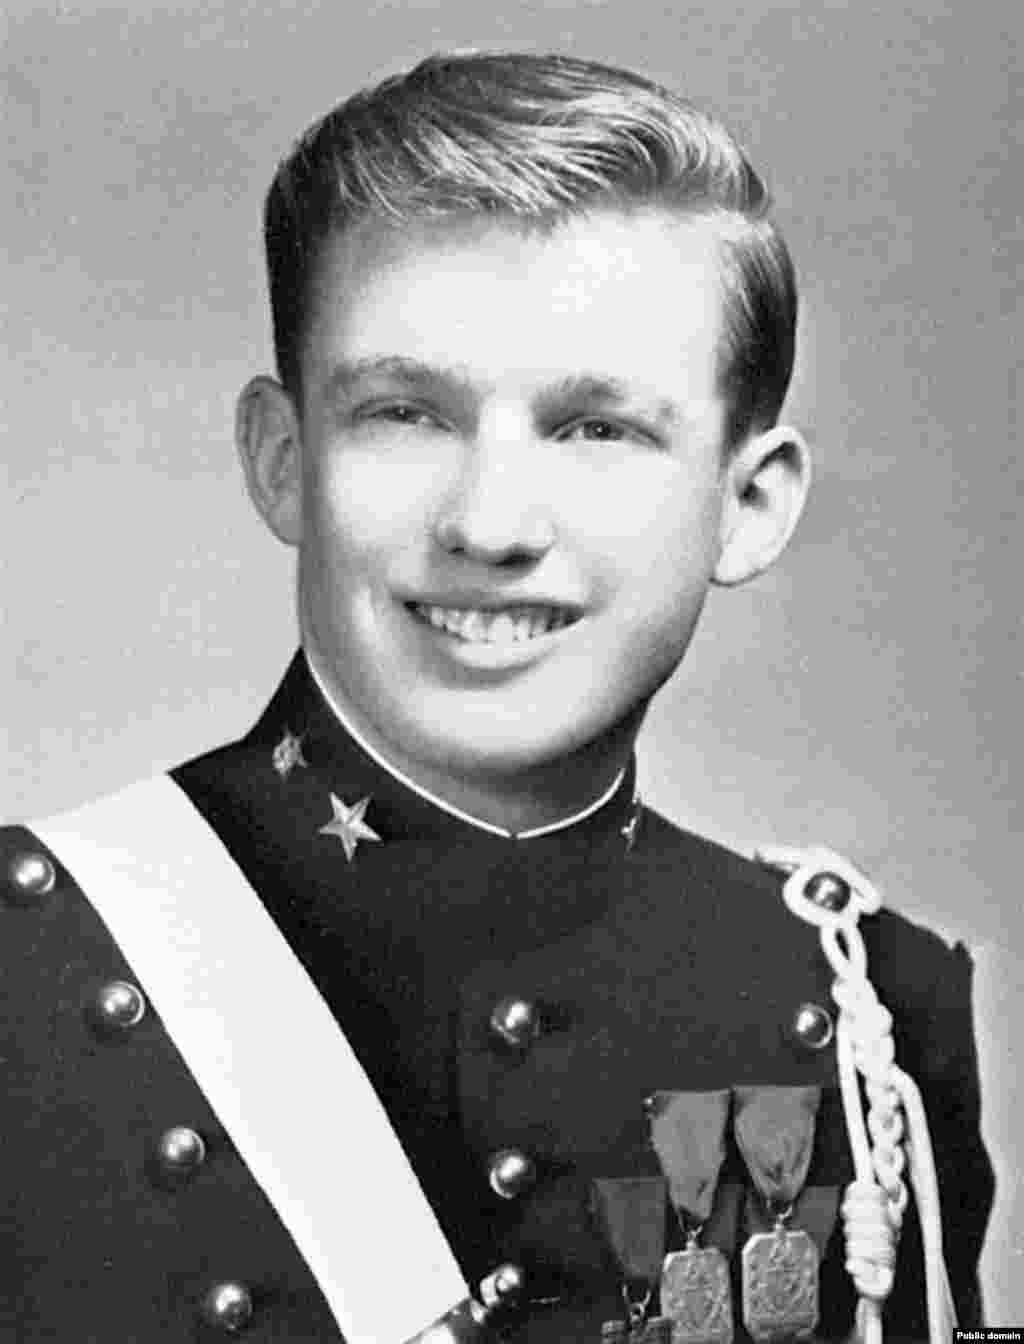 Donald Trump remaja saat bersekolah di Akademi Militer New York tahun 1964.